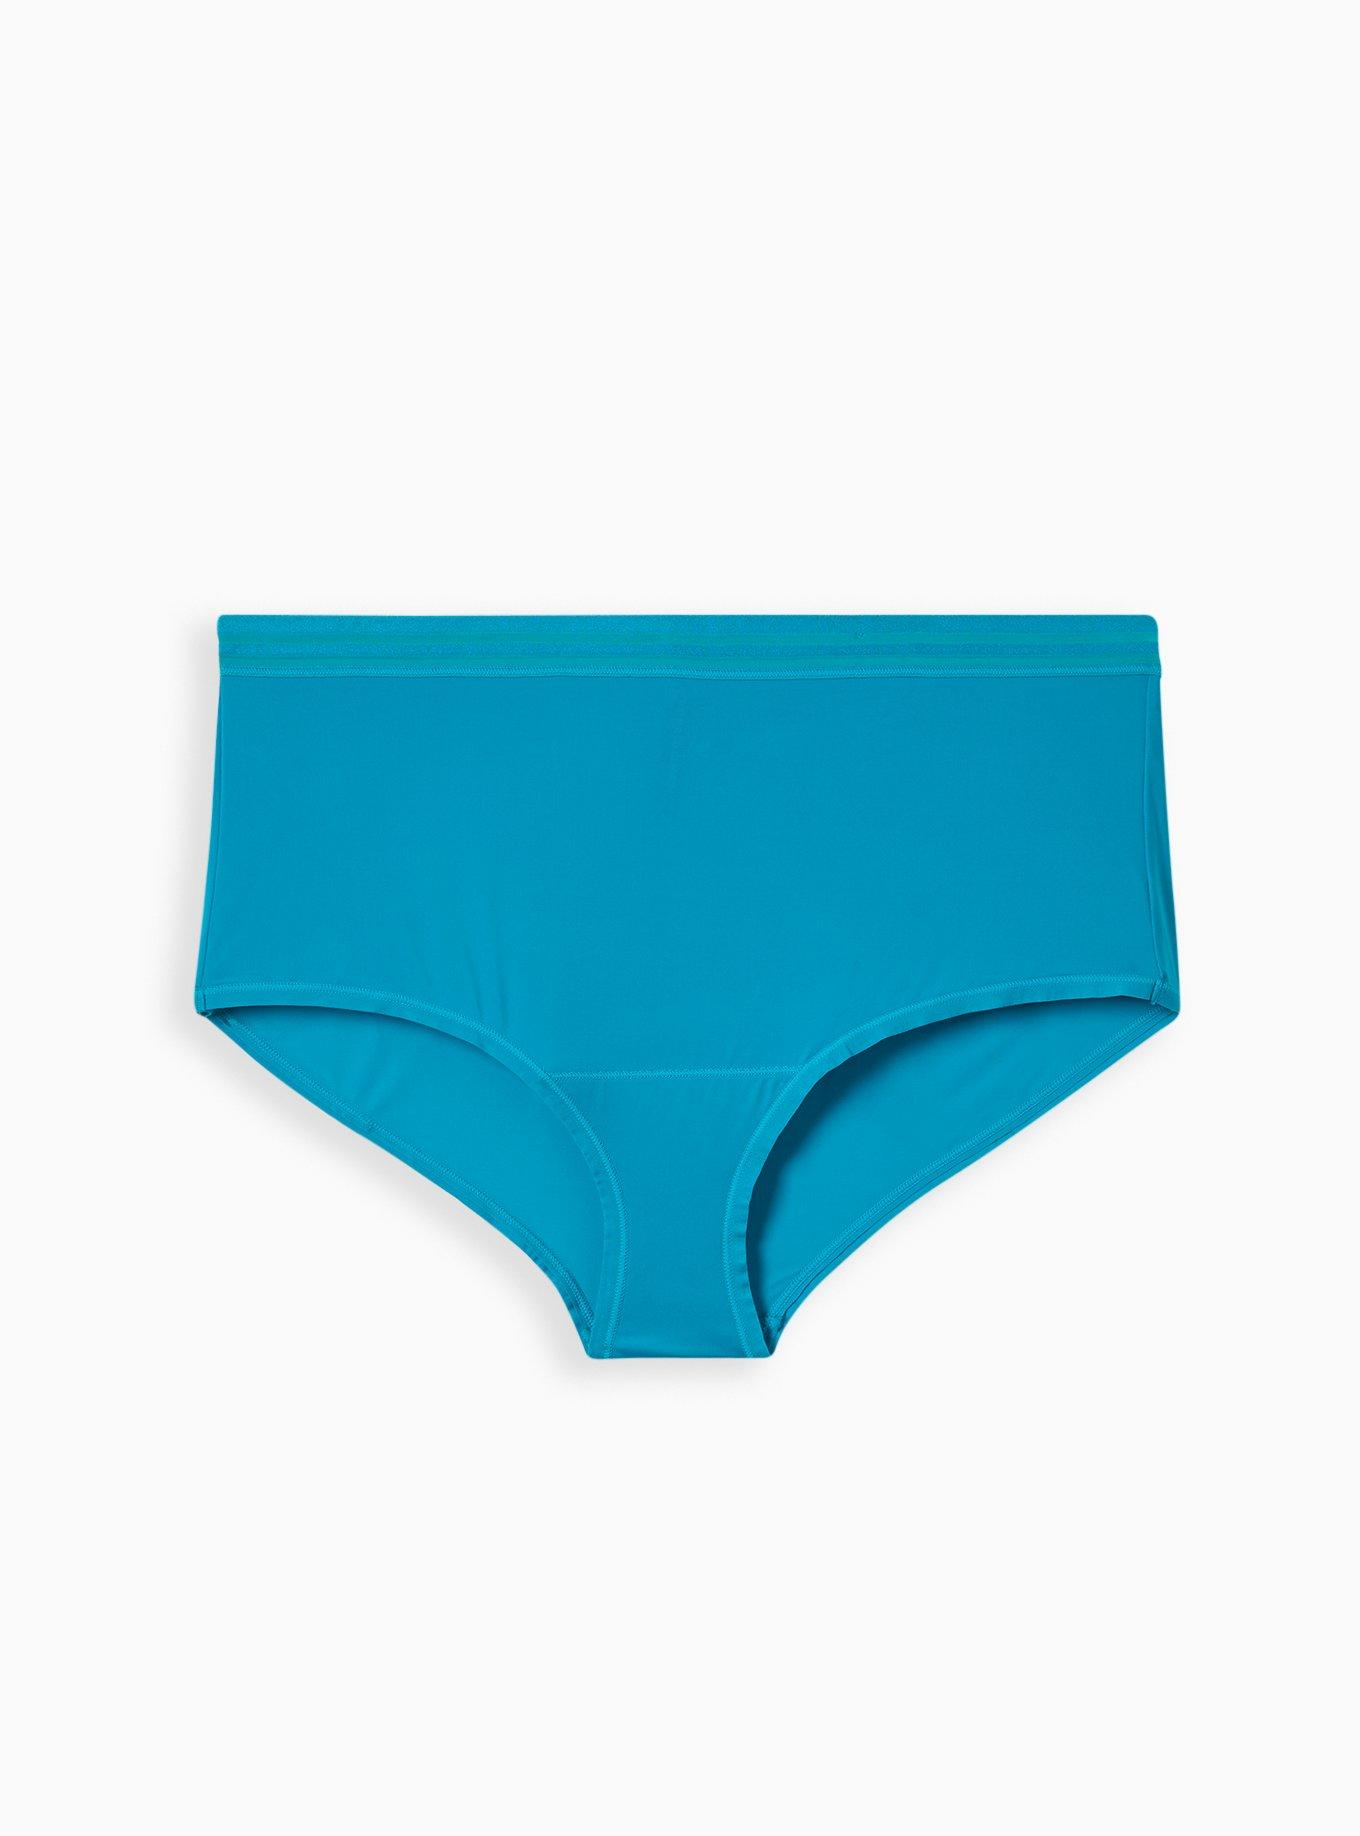 St. Eve Micro Bikini Panties Nylon/Spandex 2 Pk Blue Stripe/Navy